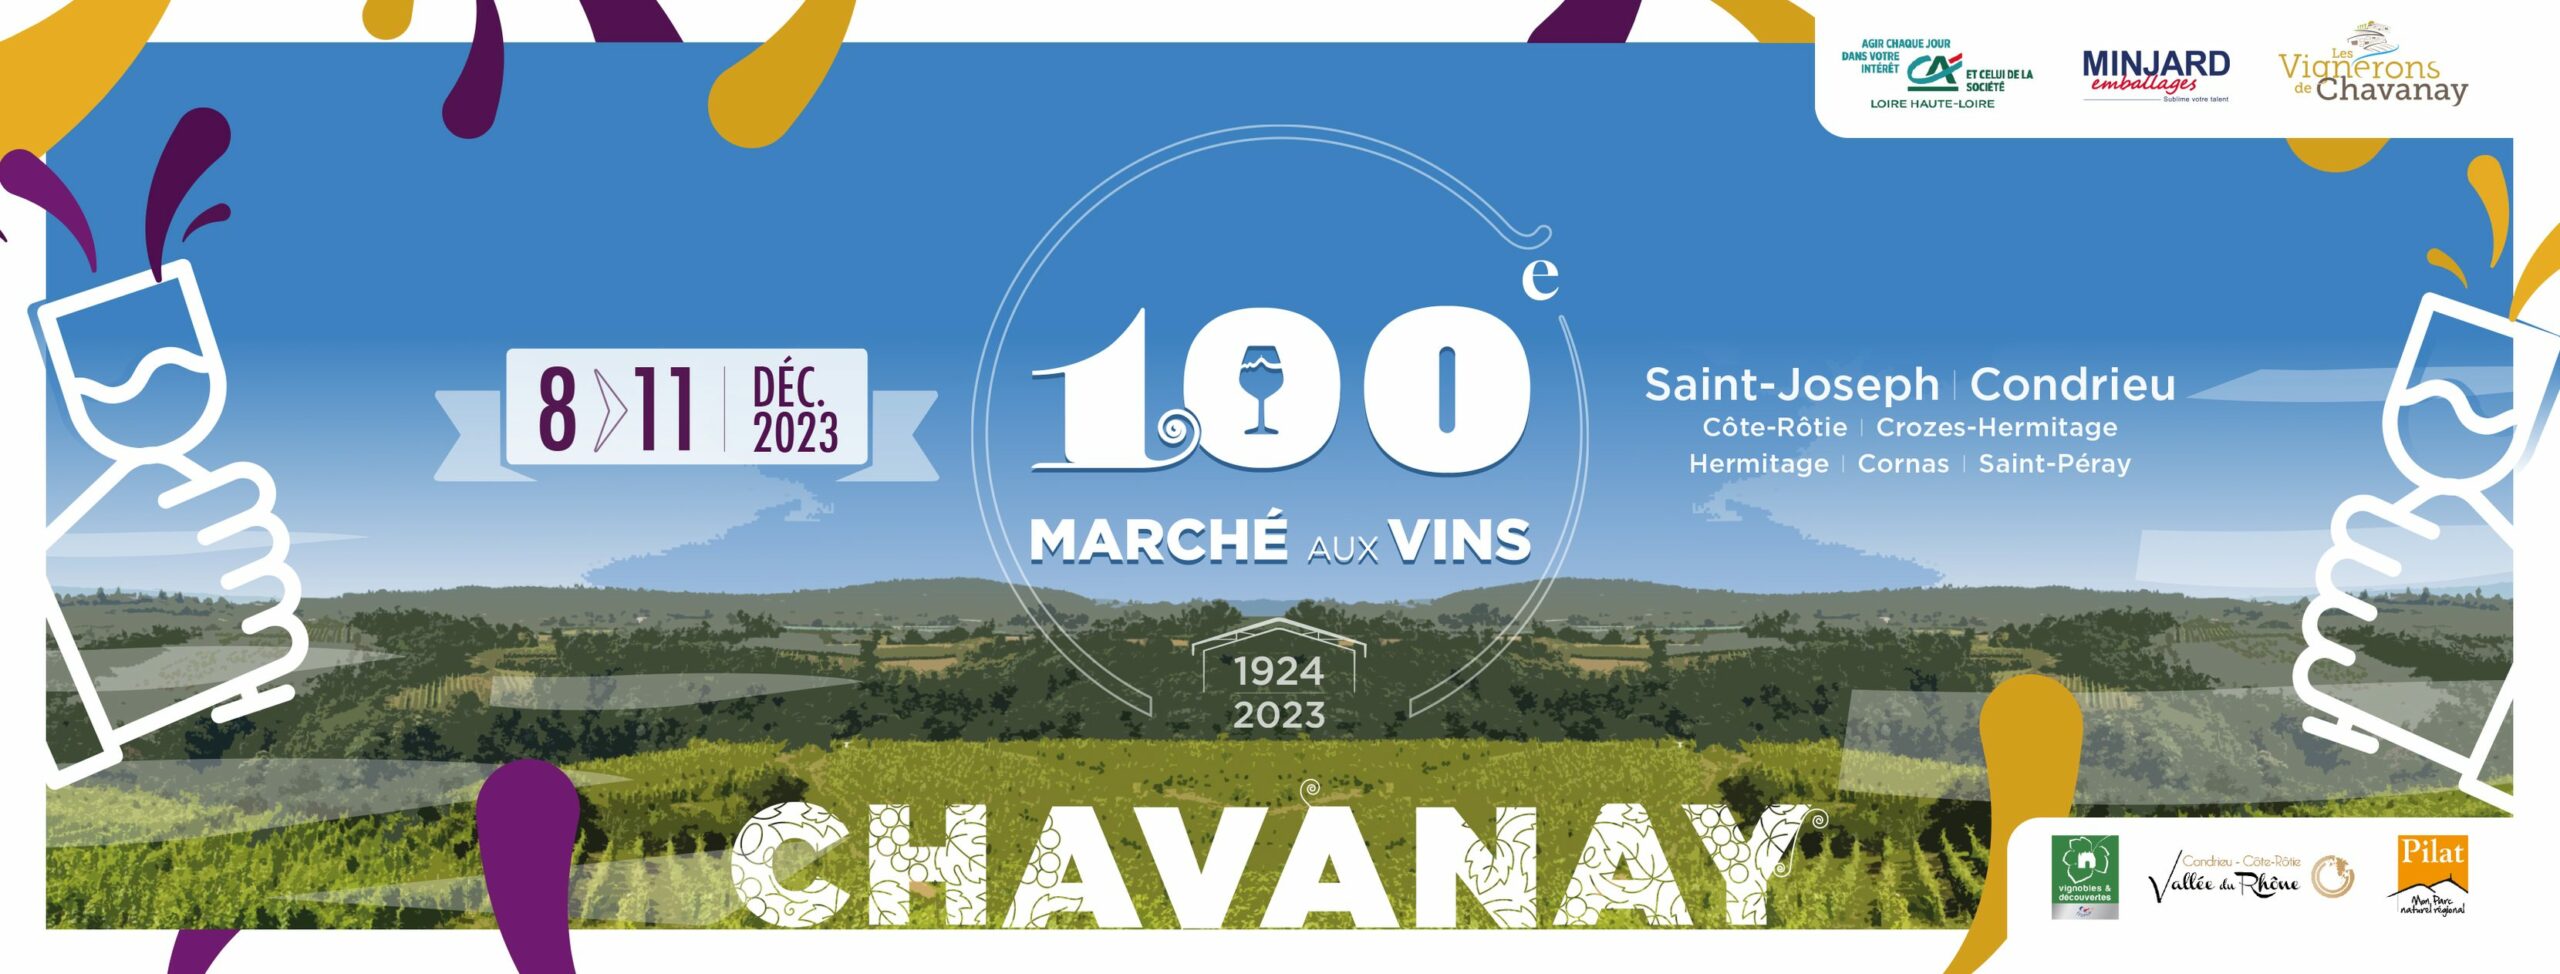 Marché au vin de Chavanay 2023